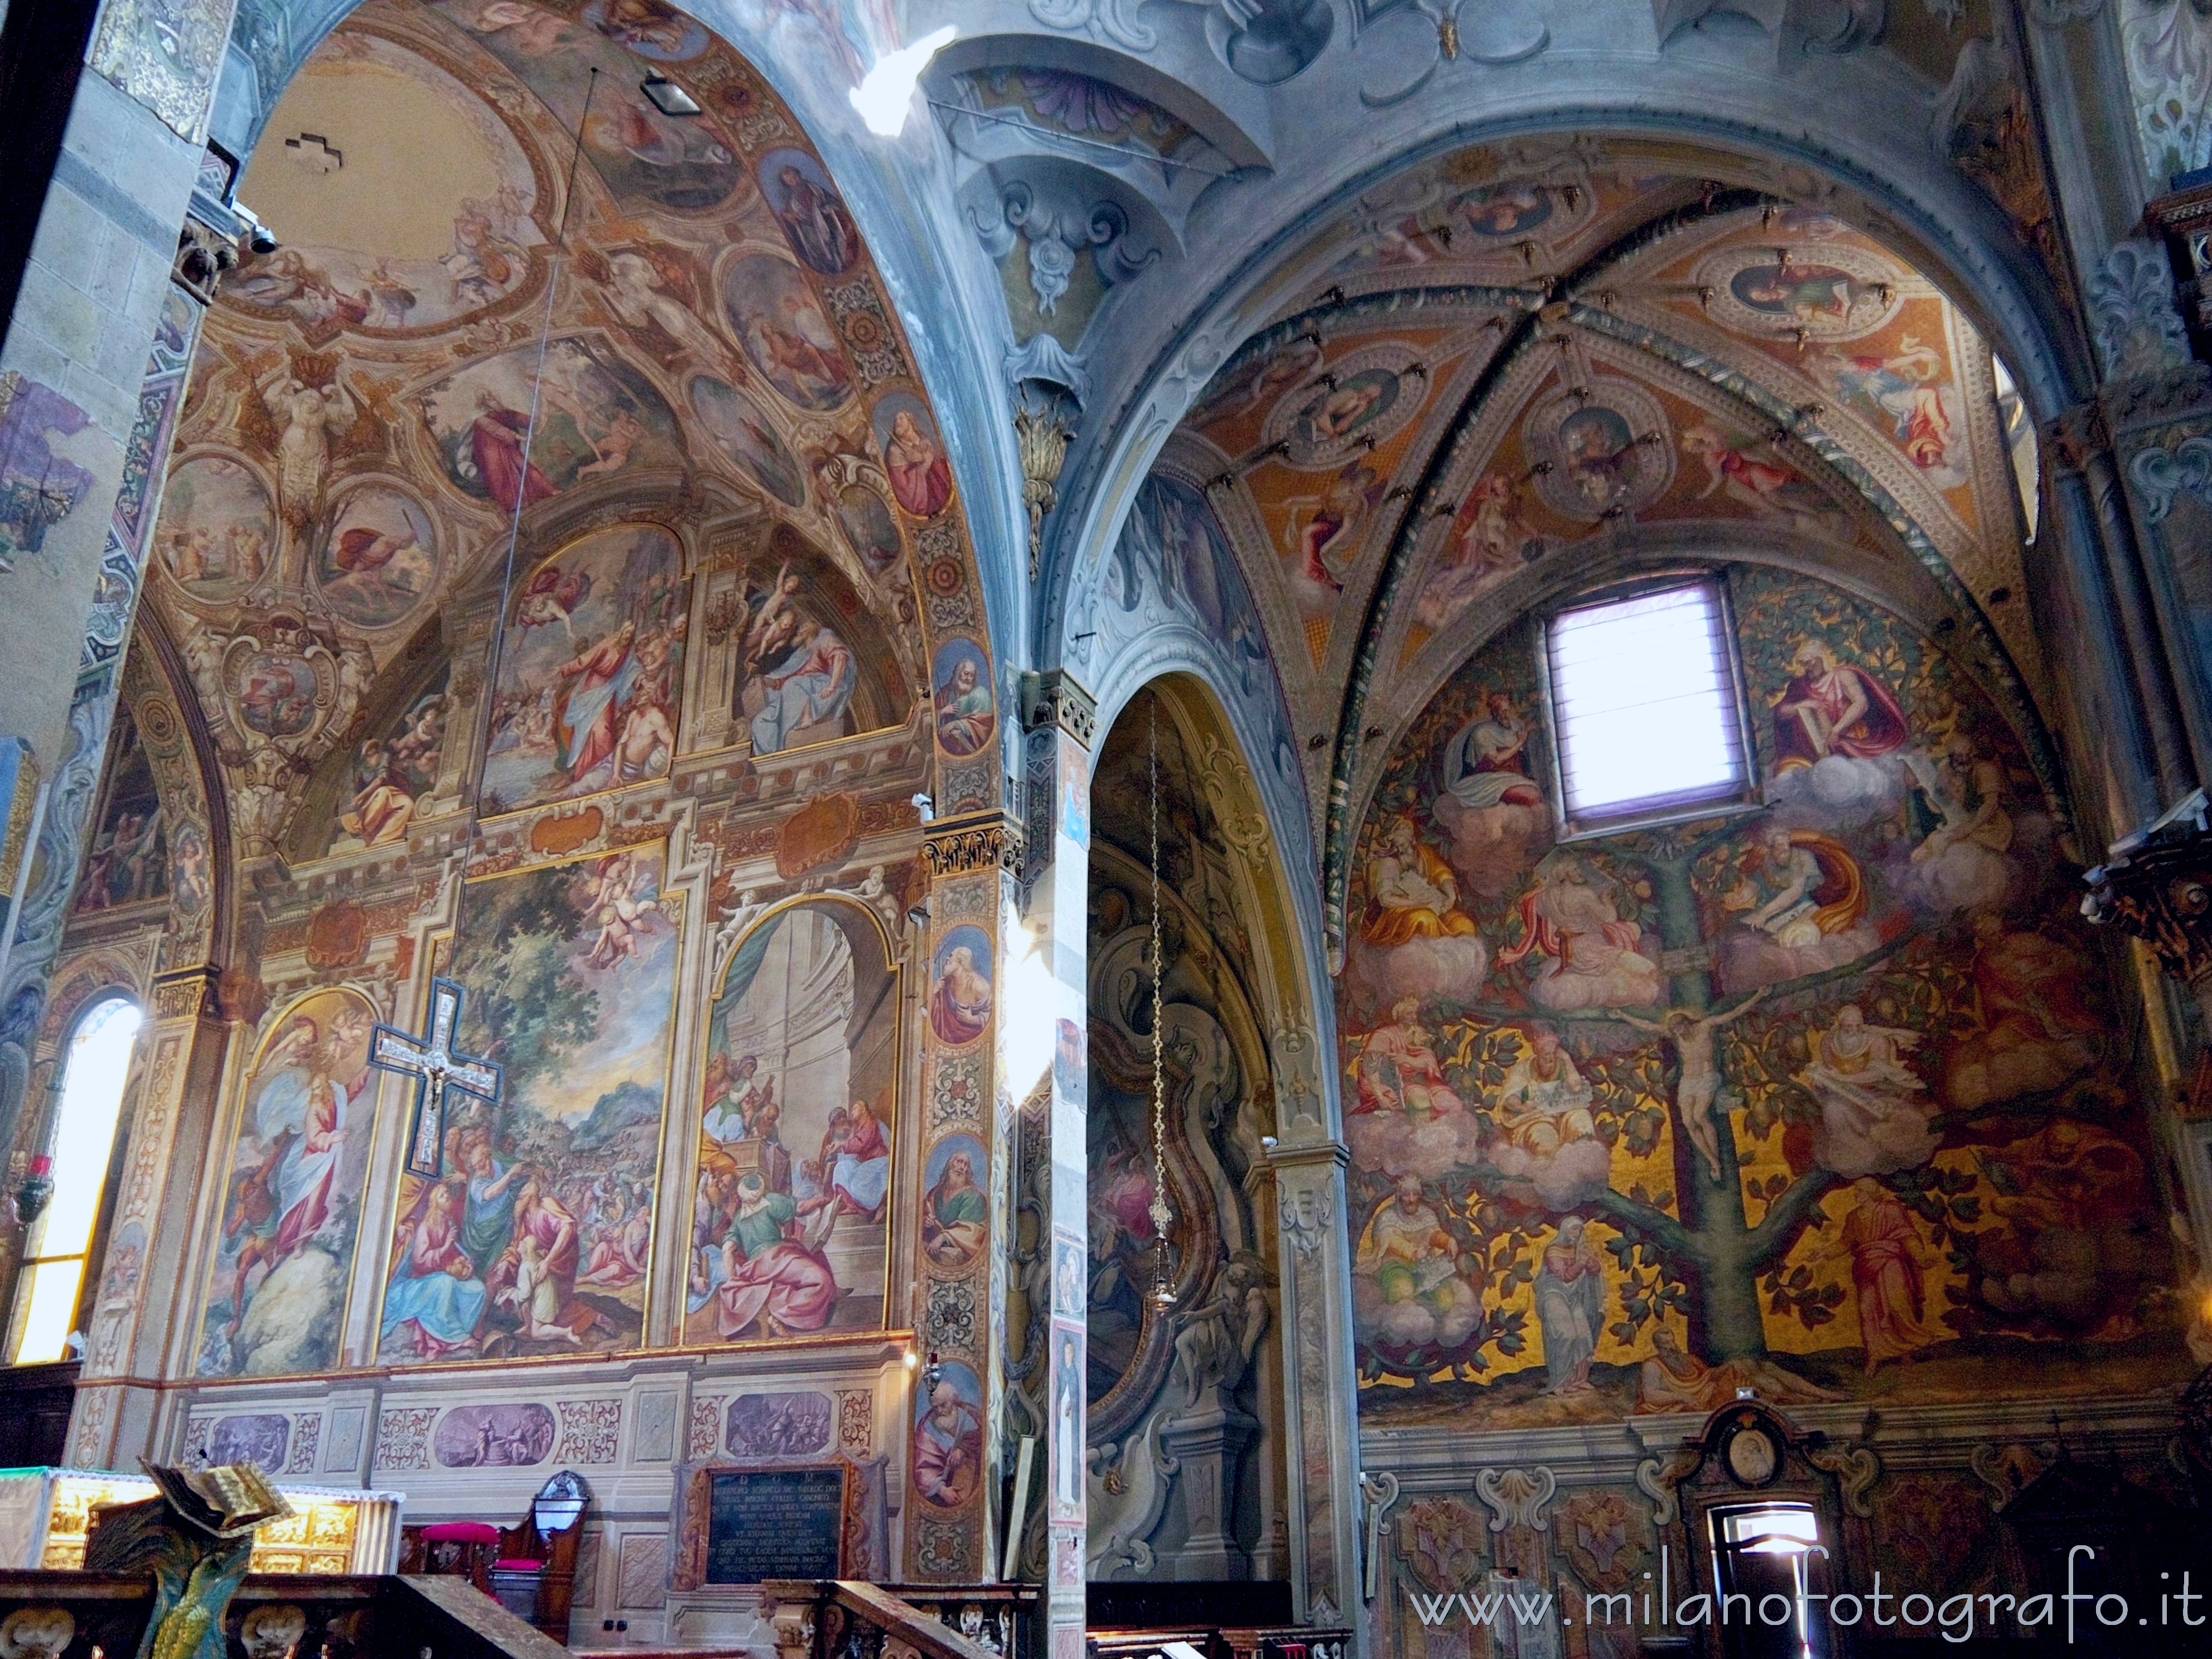 Monza (Monza e Brianza, Italy): Renaissance and Baroque frescoes in the Cathedral of Monza - Monza (Monza e Brianza, Italy)